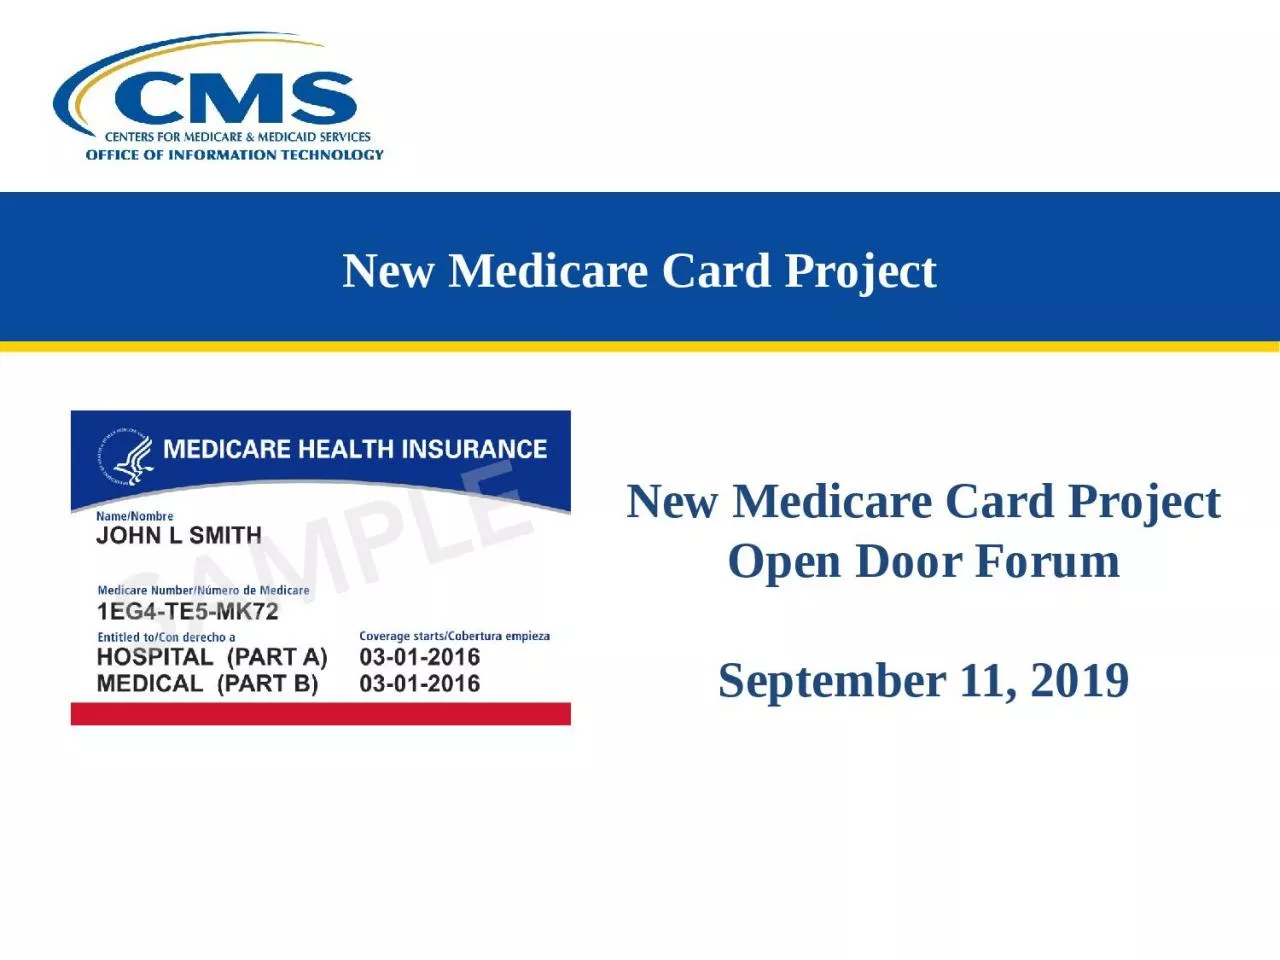 New Medicare Card Project Open Door Forum